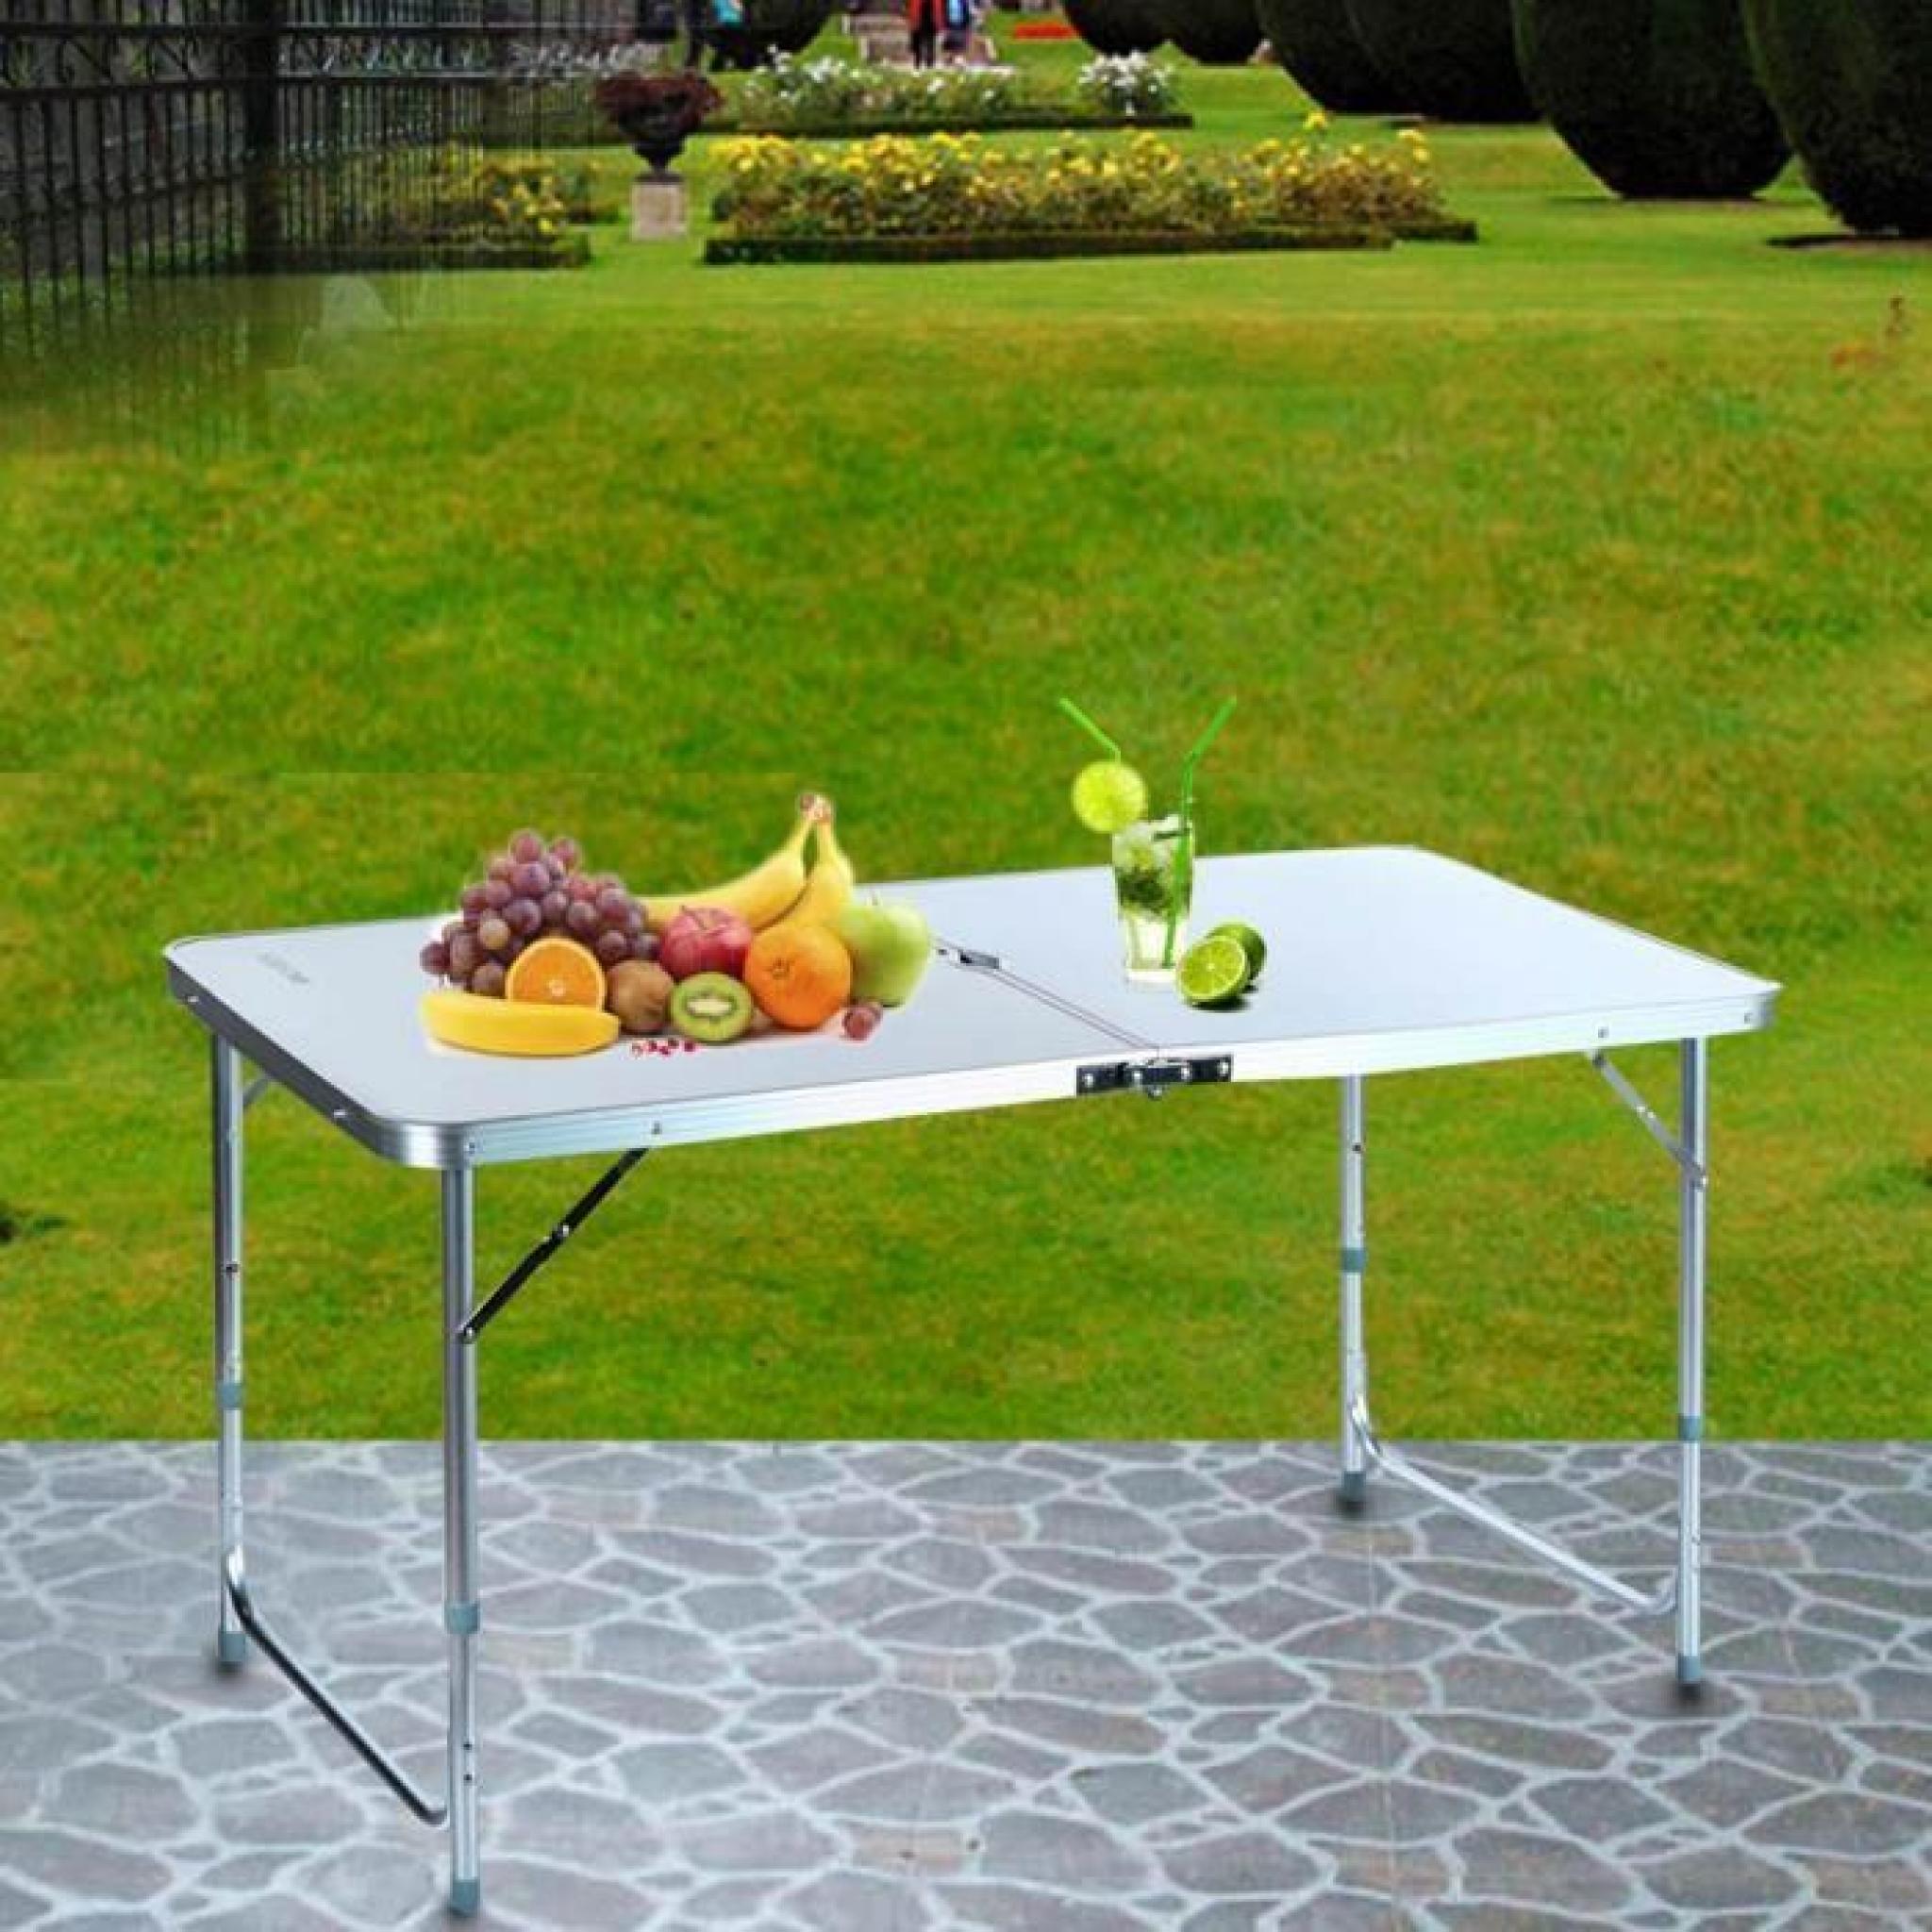 Ancheer table de pique-nique 4ft nouveau Camping Table pliante avec poignée Portable de petite Table à l'extérieur de transport